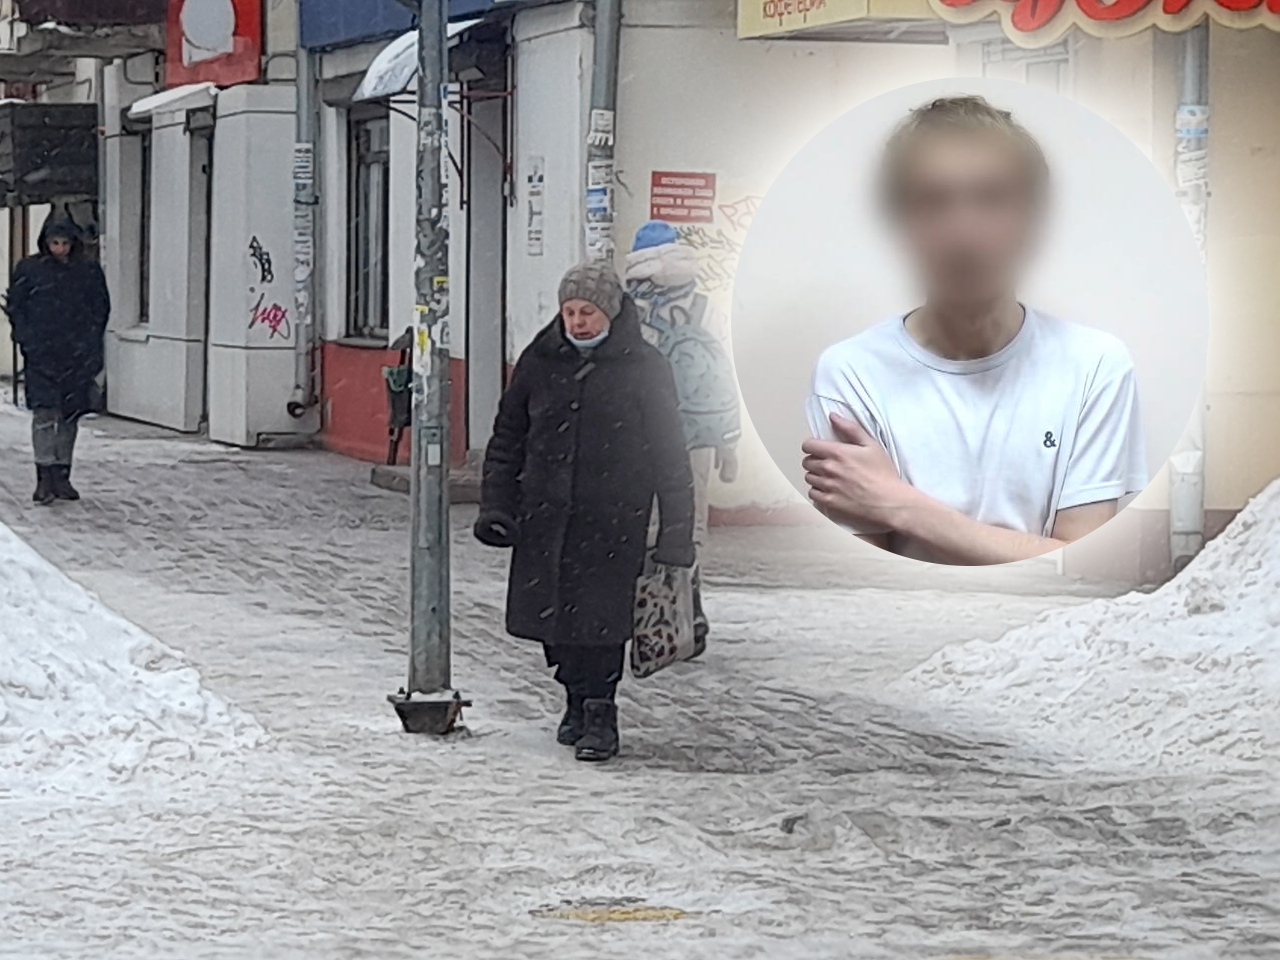 "Узнала?": видеоисповедь в Ярославле записал молодой преступник